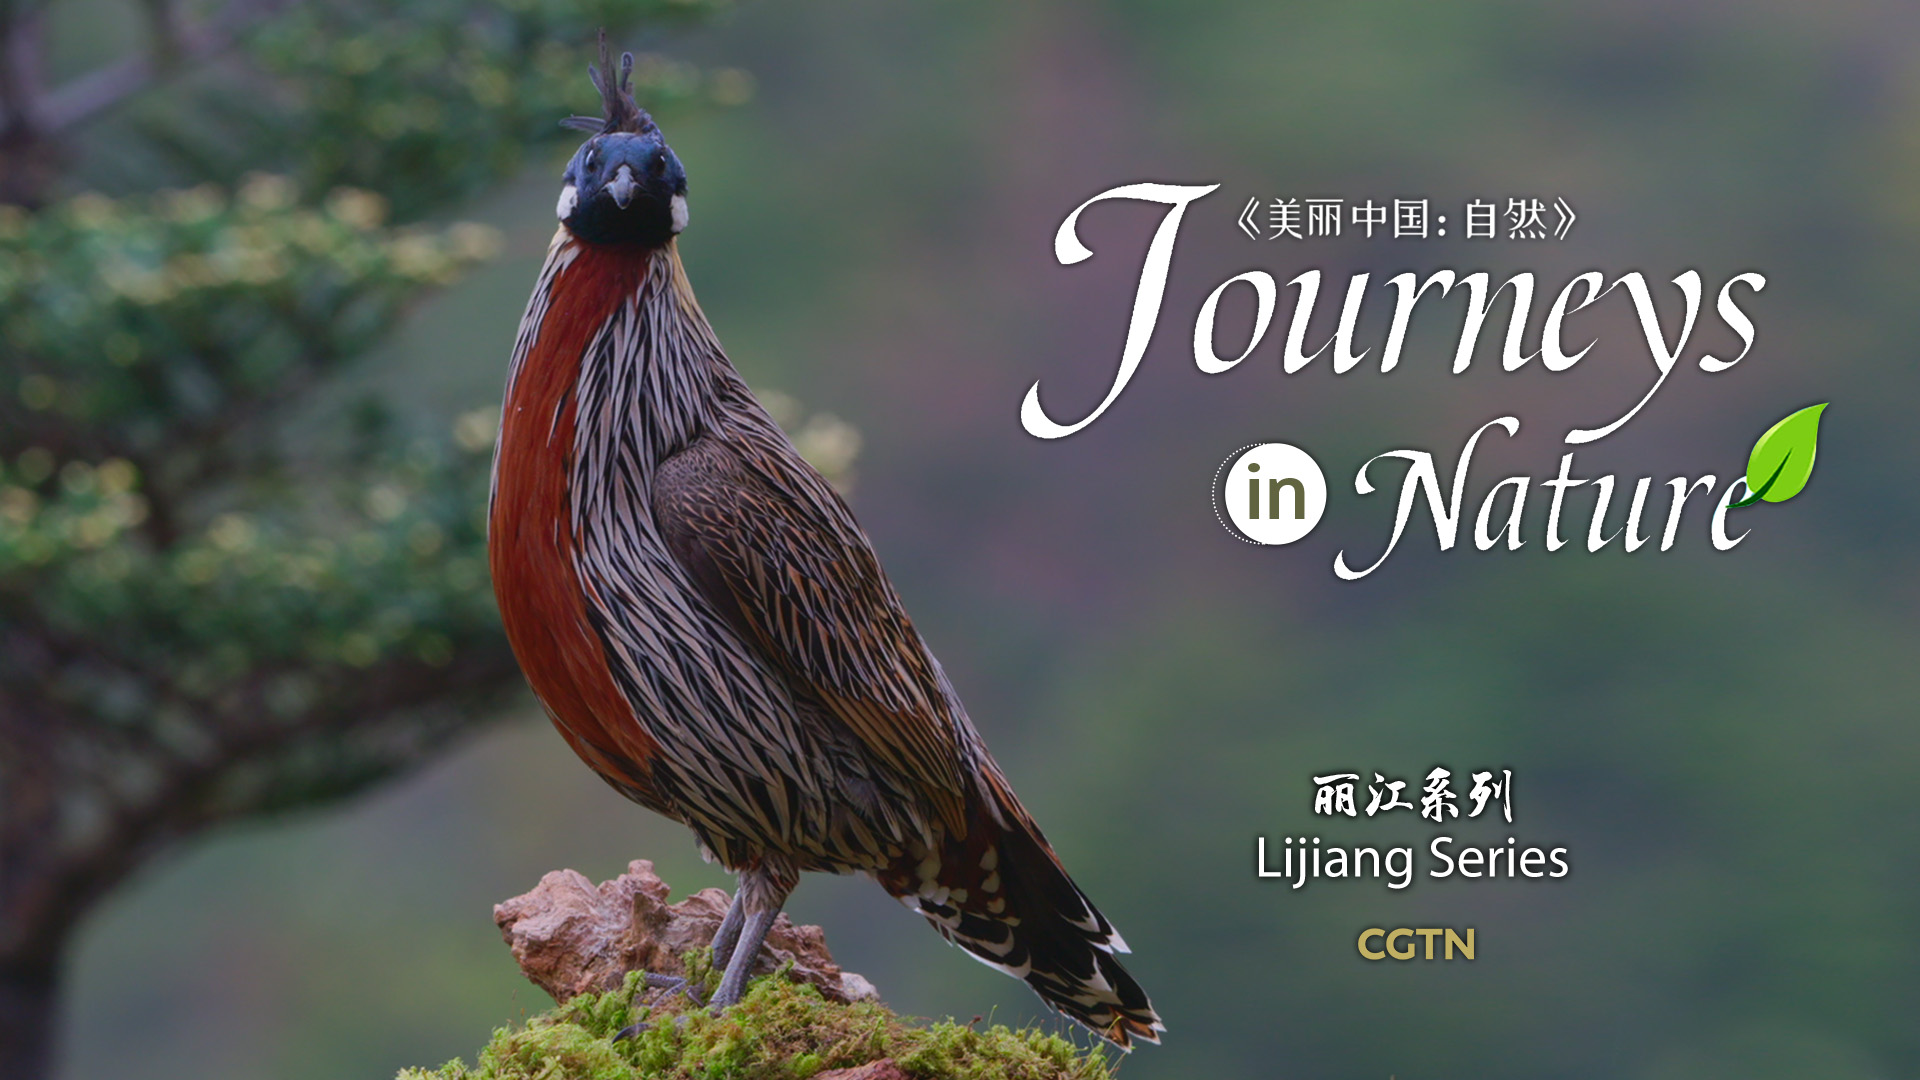 CGTN Nature presents 'Journeys in Nature: Lijiang Series'